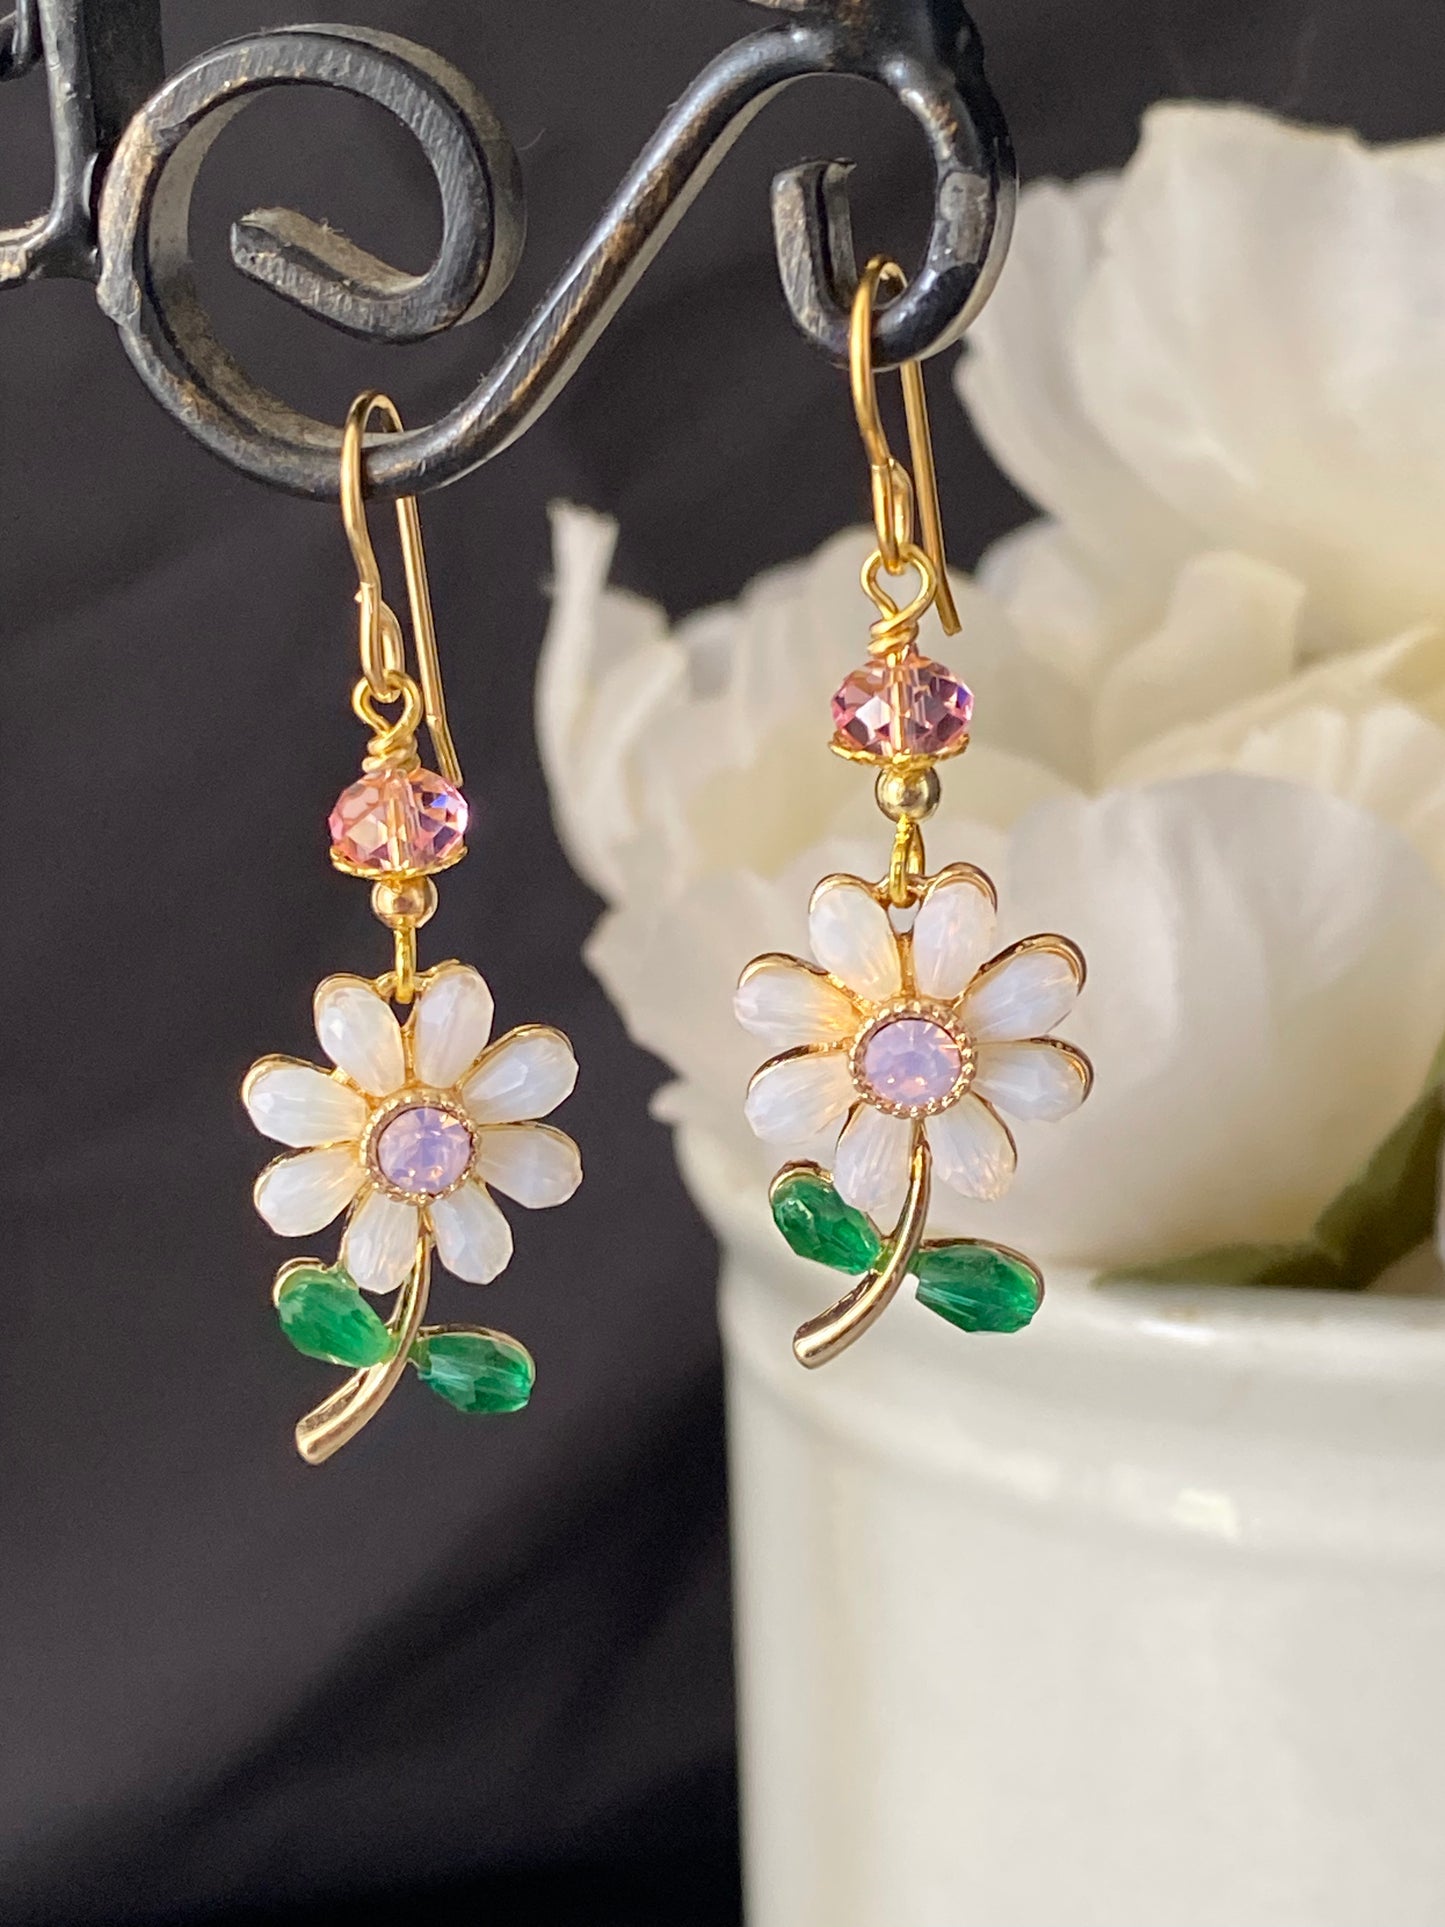 Pink crystal flowers, gold metal earrings, jewelry.